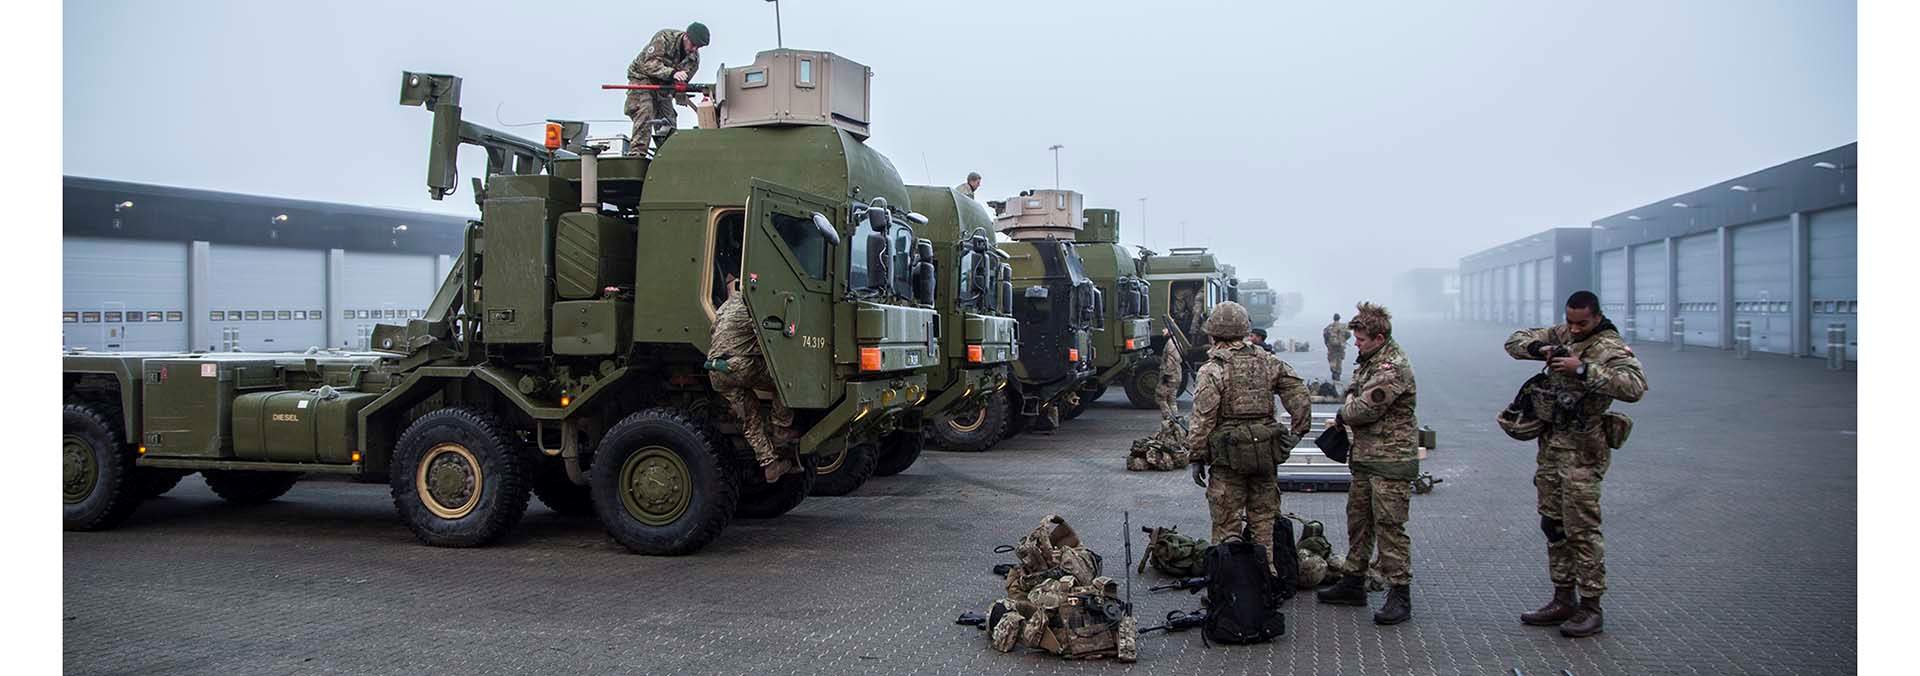 Soldater pakker sammen på P2 efter øvelse